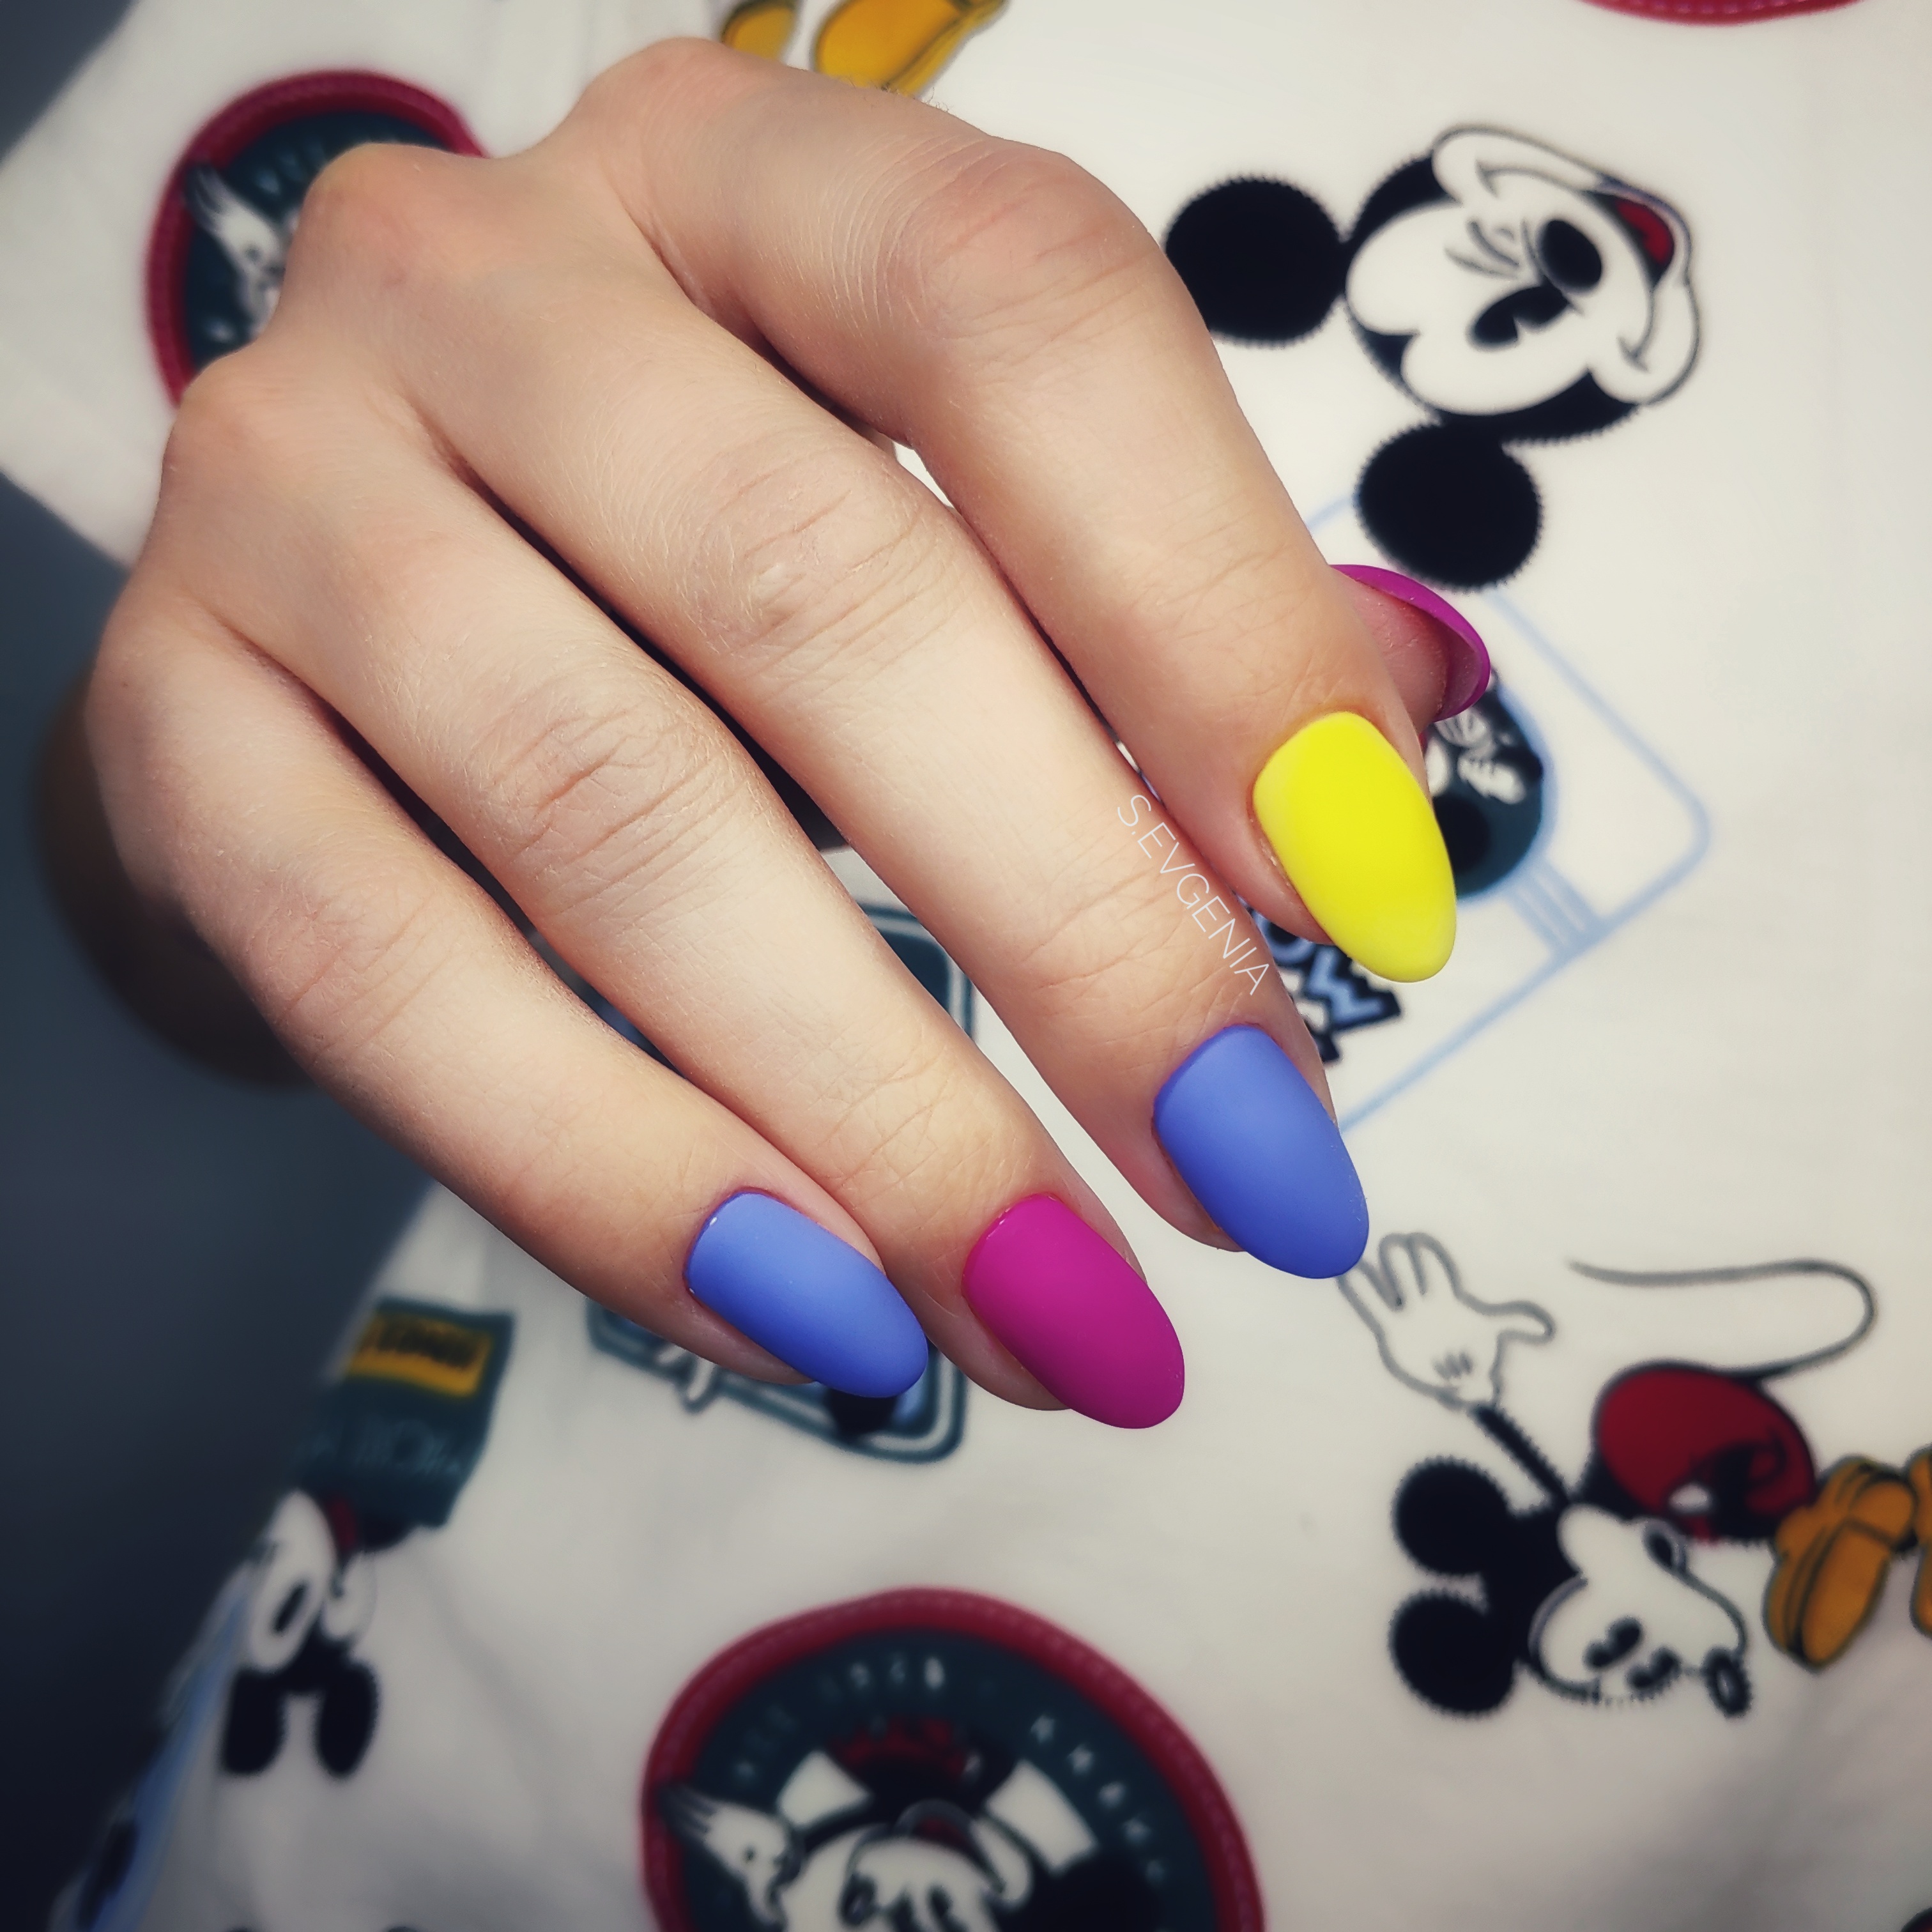 Матовый разноцветный маникюр на короткие ногти.